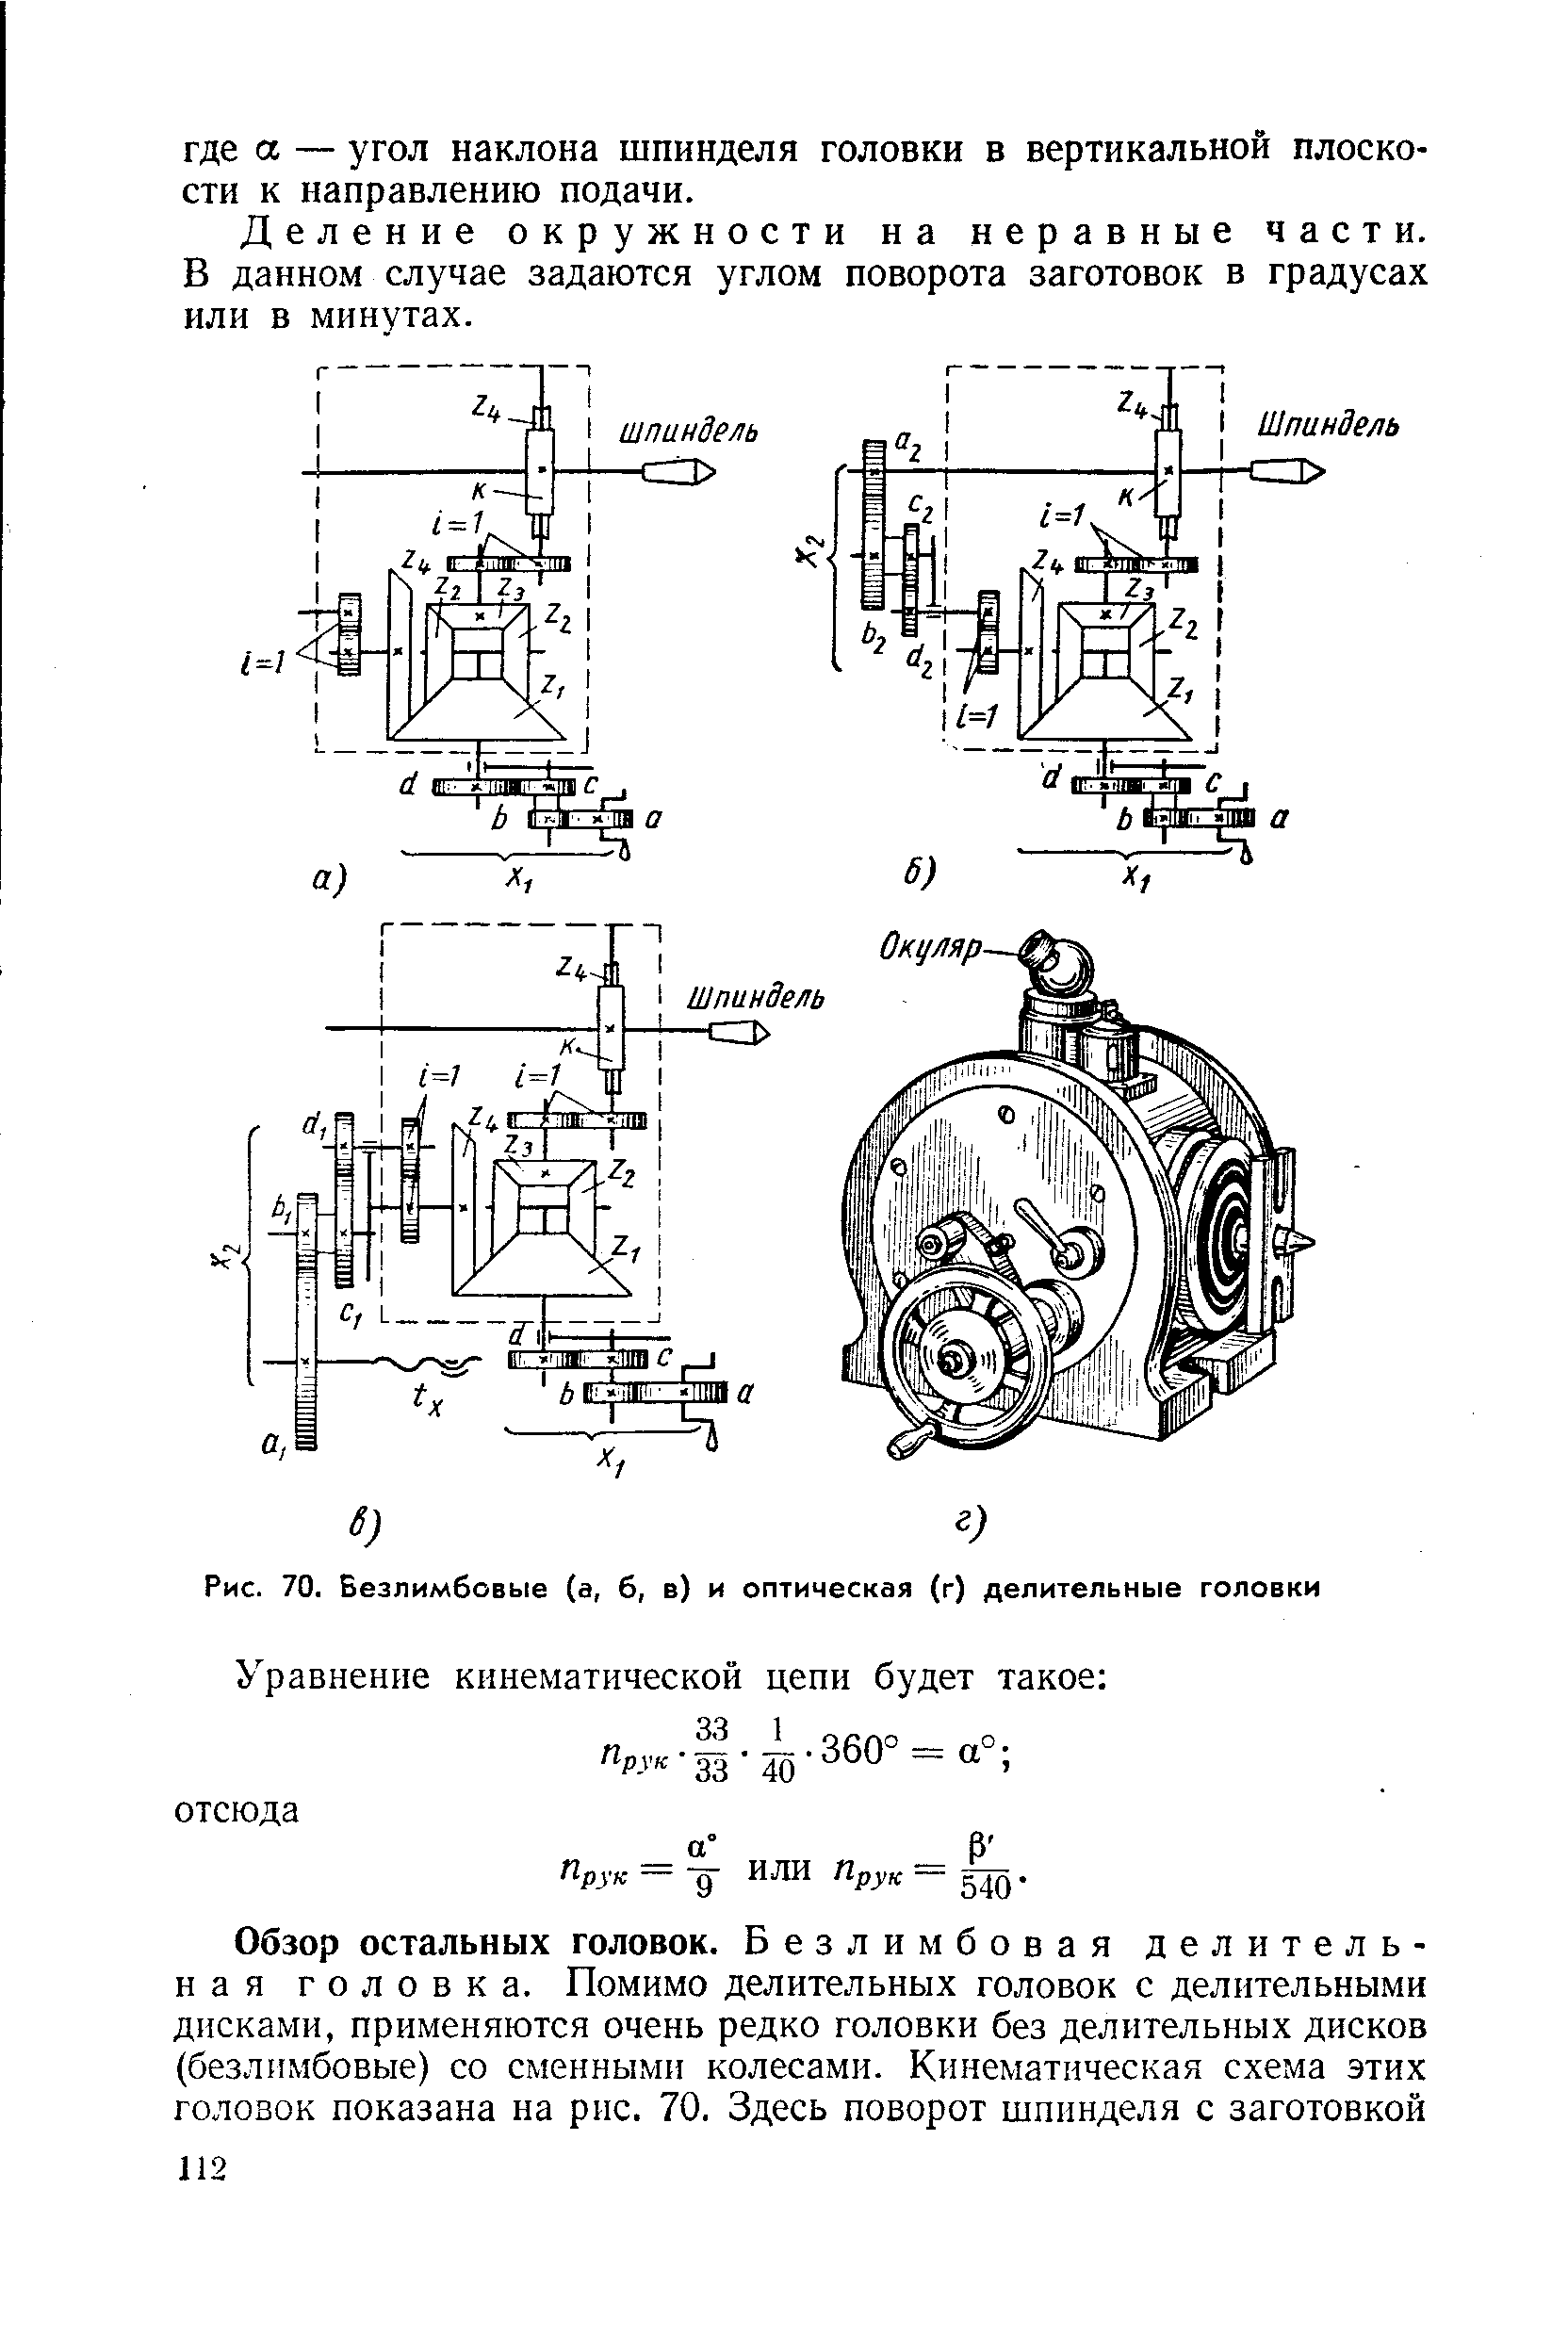 Рис. 70. Безлимбовые (а, б, в) и оптическая (г) делительные головки
